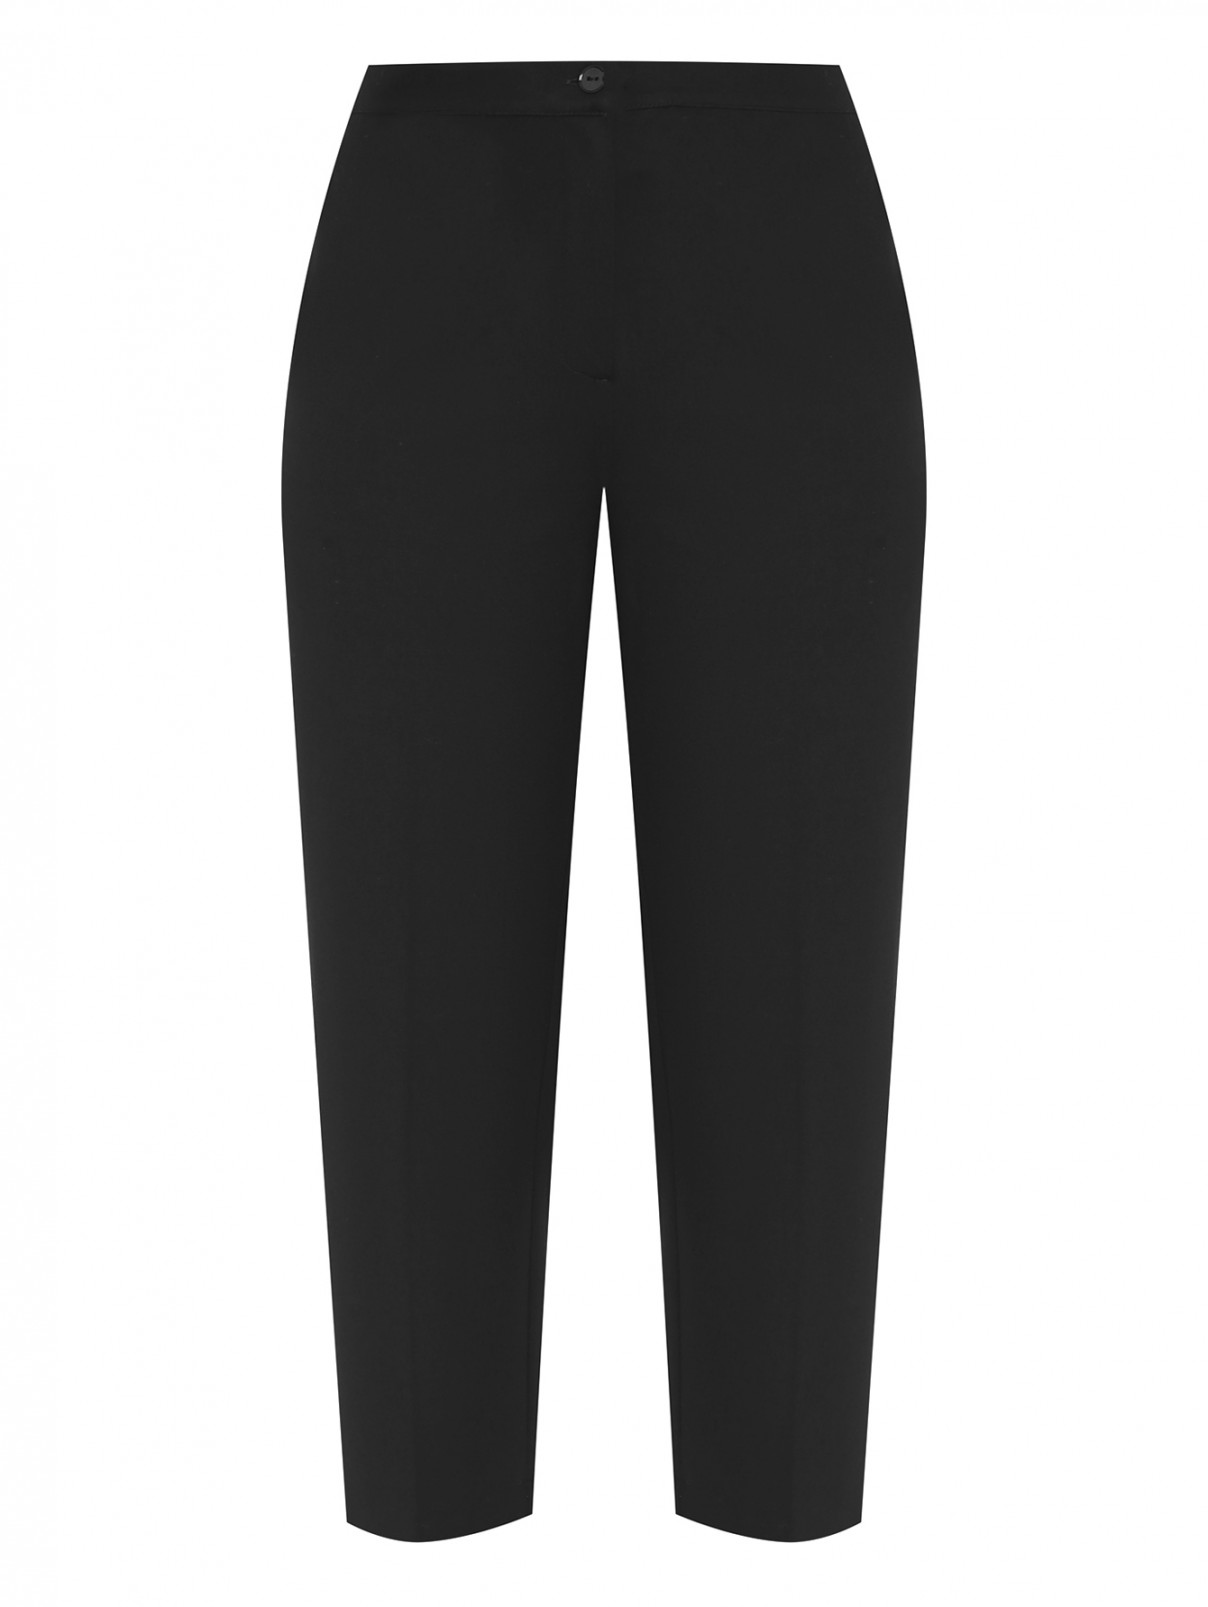 Трикотажные брюки с карманами Persona by Marina Rinaldi  –  Общий вид  – Цвет:  Черный